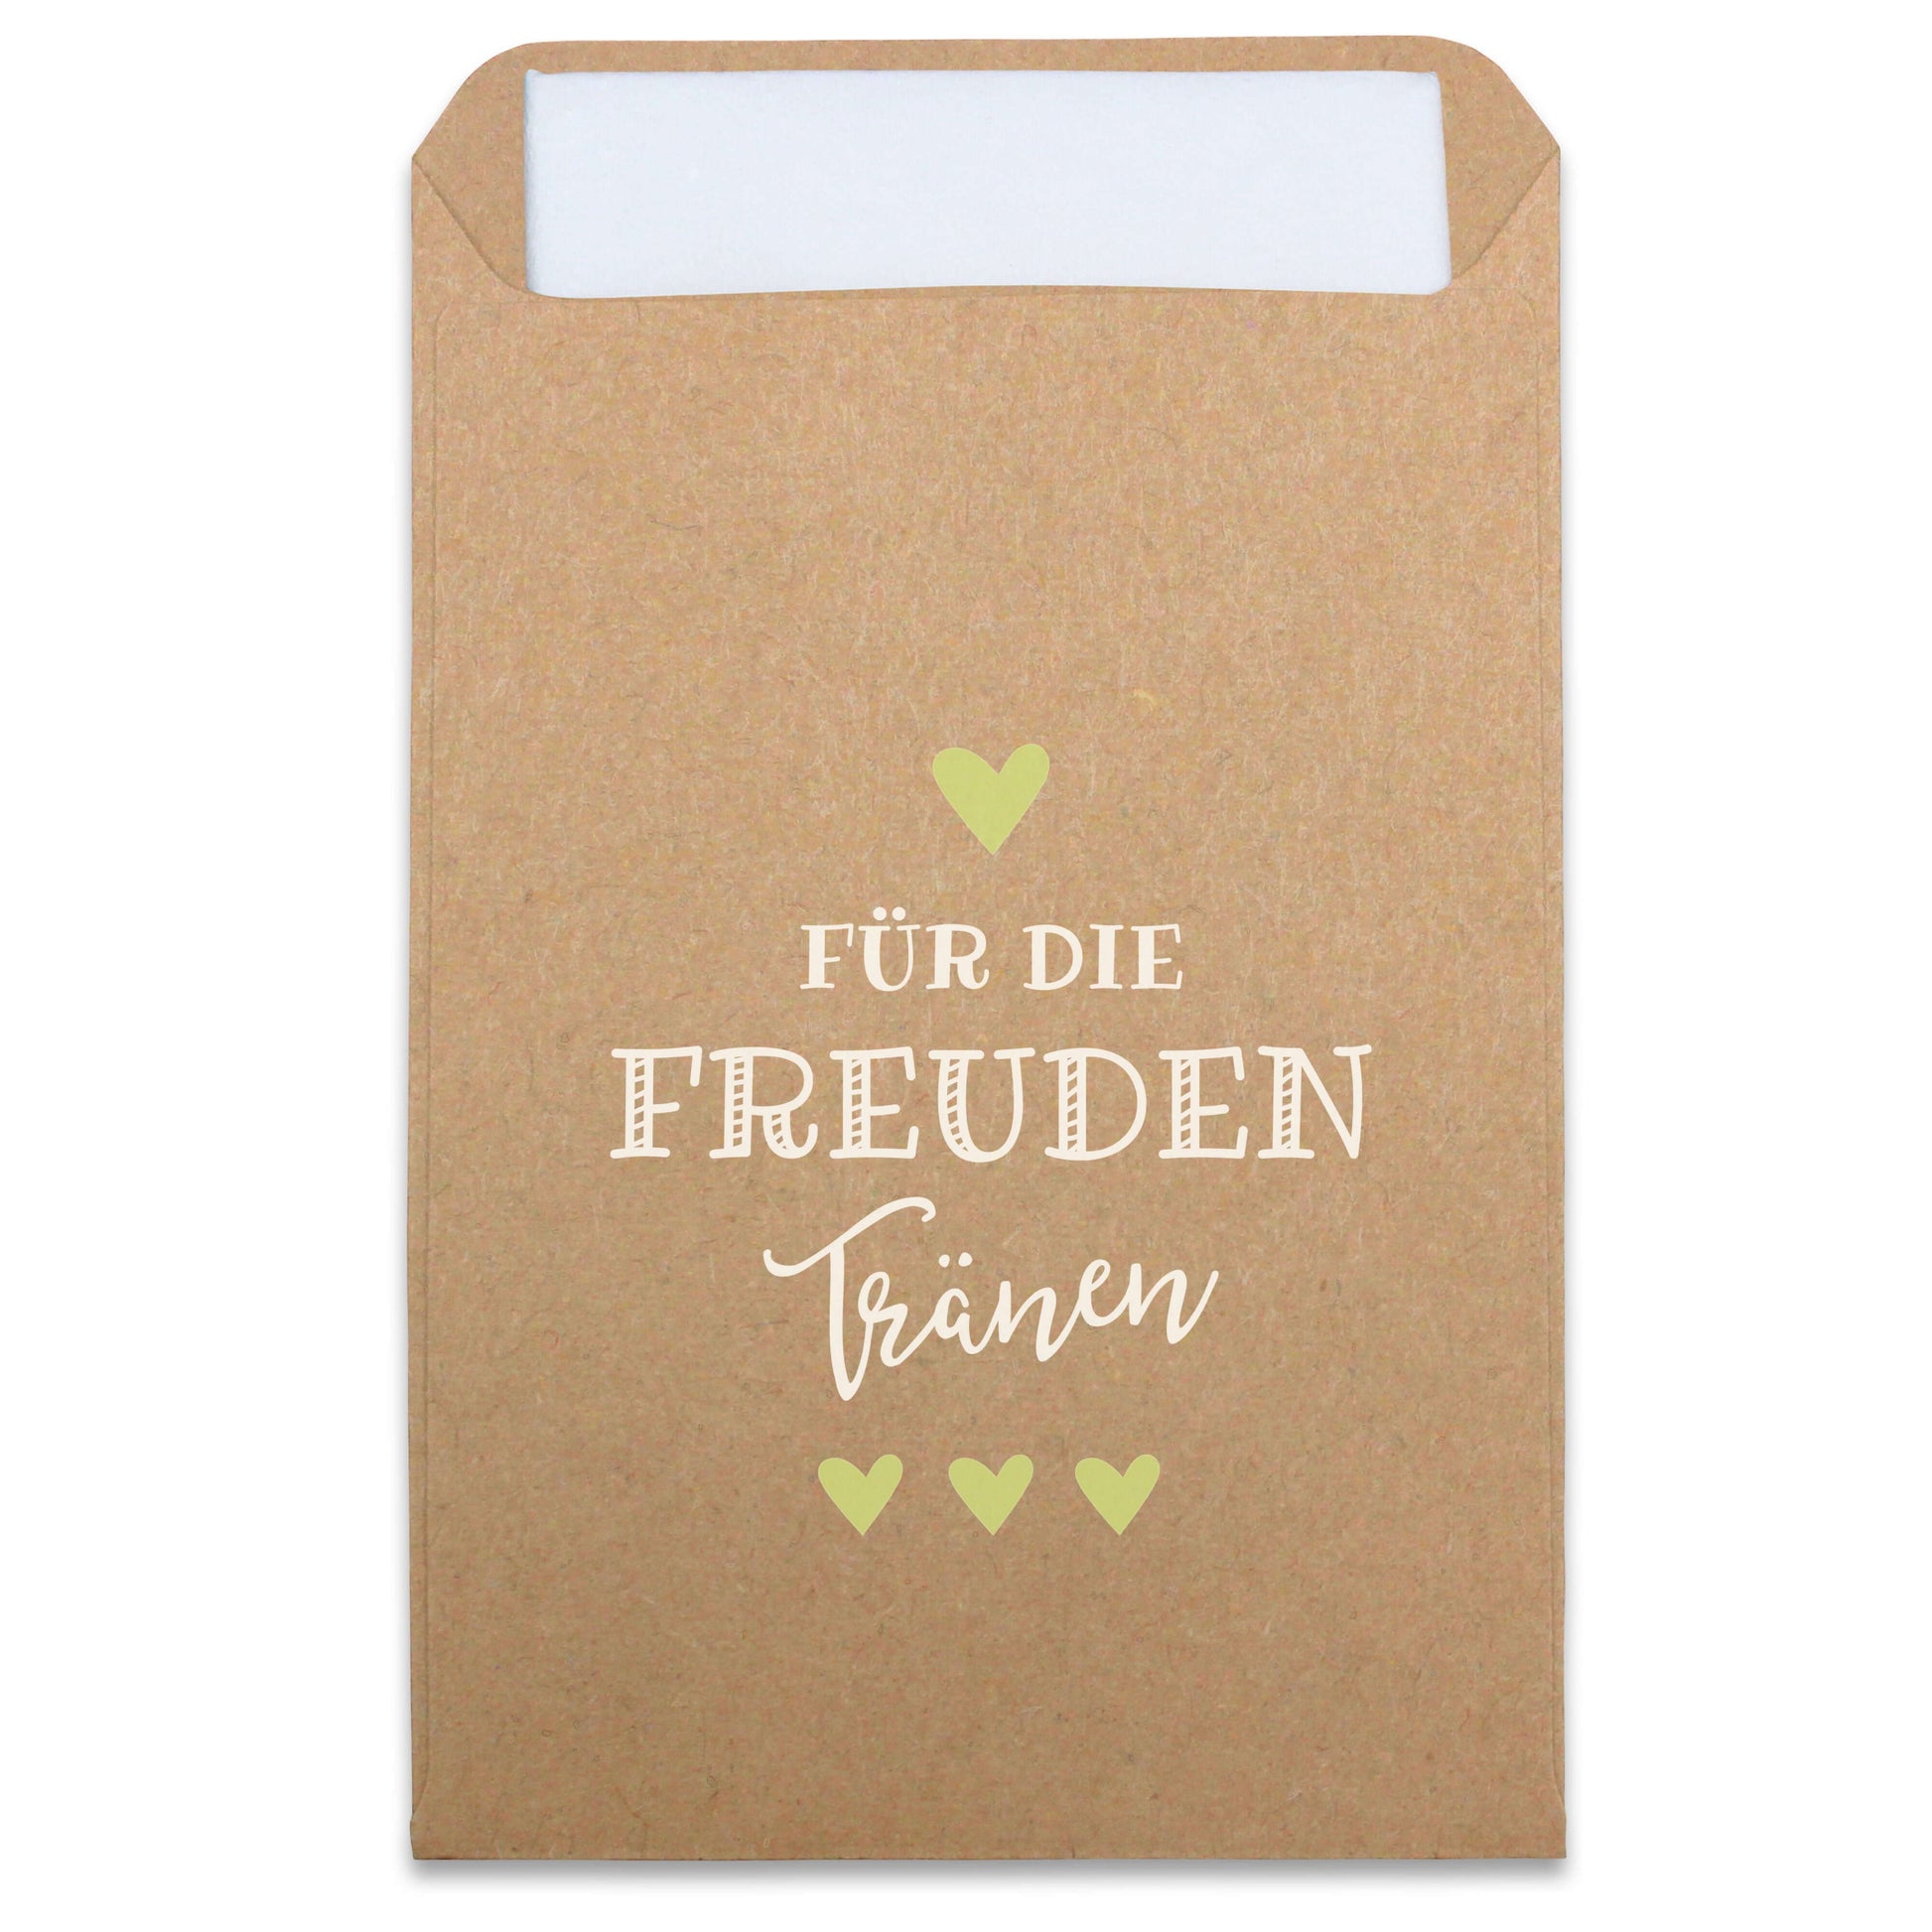 Freudentränen Taschentücher Hüllen "Für die Freudentränen" Kraftpapier mit hellgrün